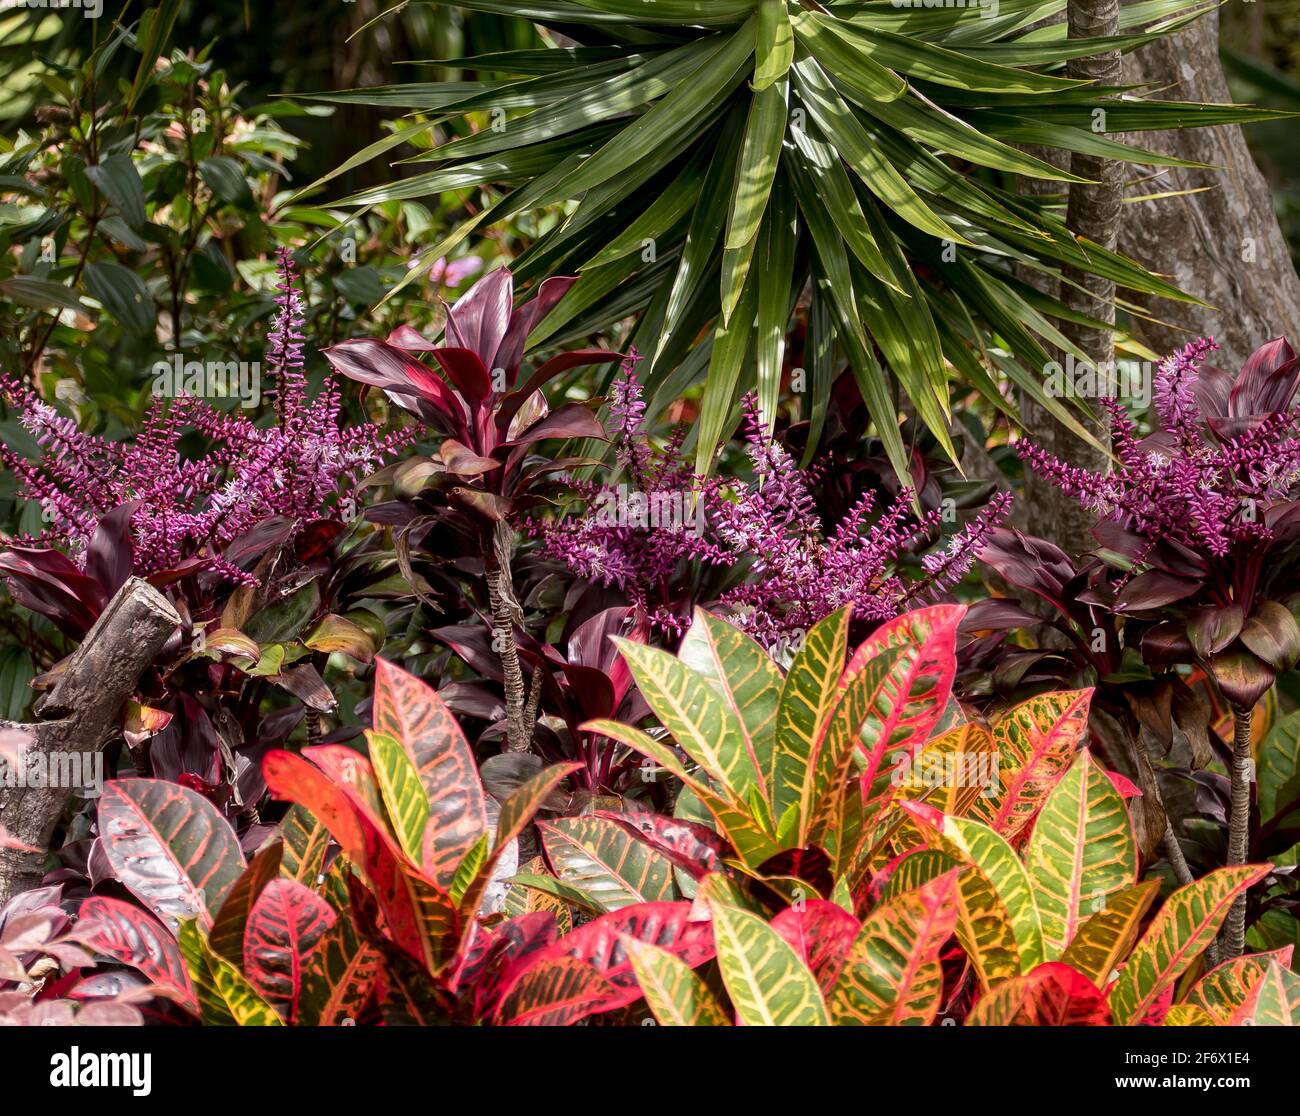 Plantas de follaje de colores arcoiris en jardín australiano privado.Croton (codiaeum variegatum),Cordyline fruticosa Firestorm,Dracaena marginata, Foto de stock